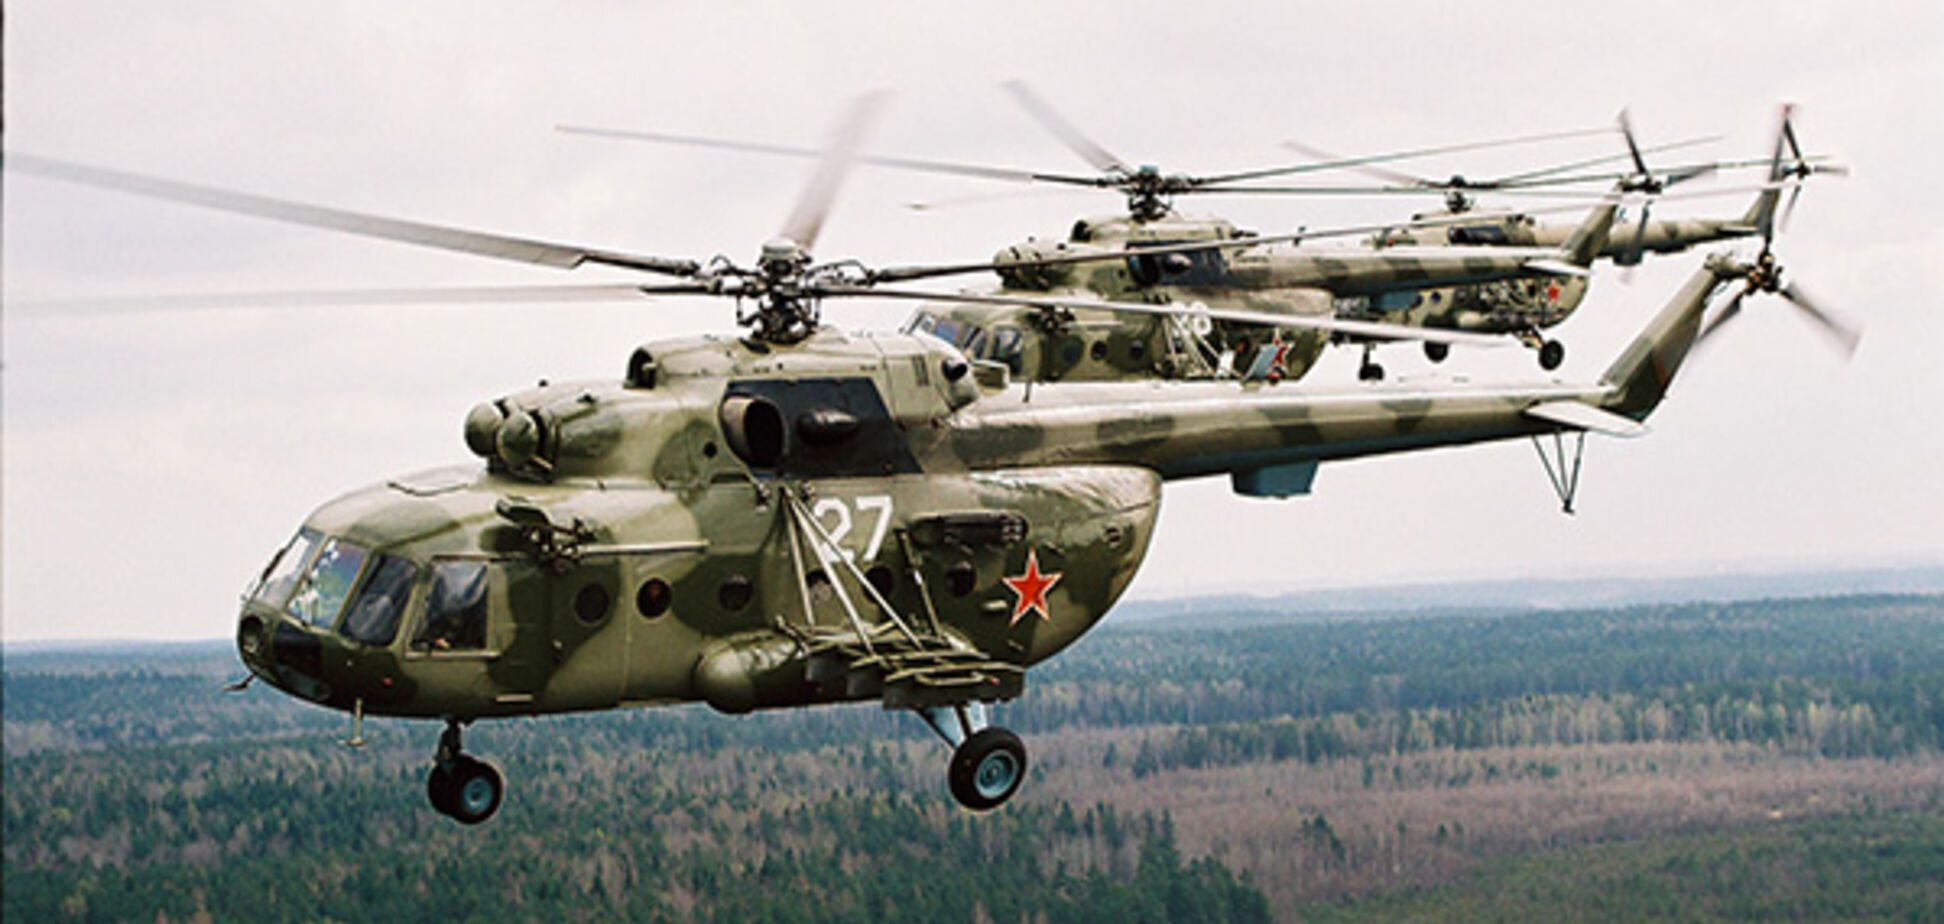 Людей зажало в салоне: в России аварийно сел вертолет, есть погибшие